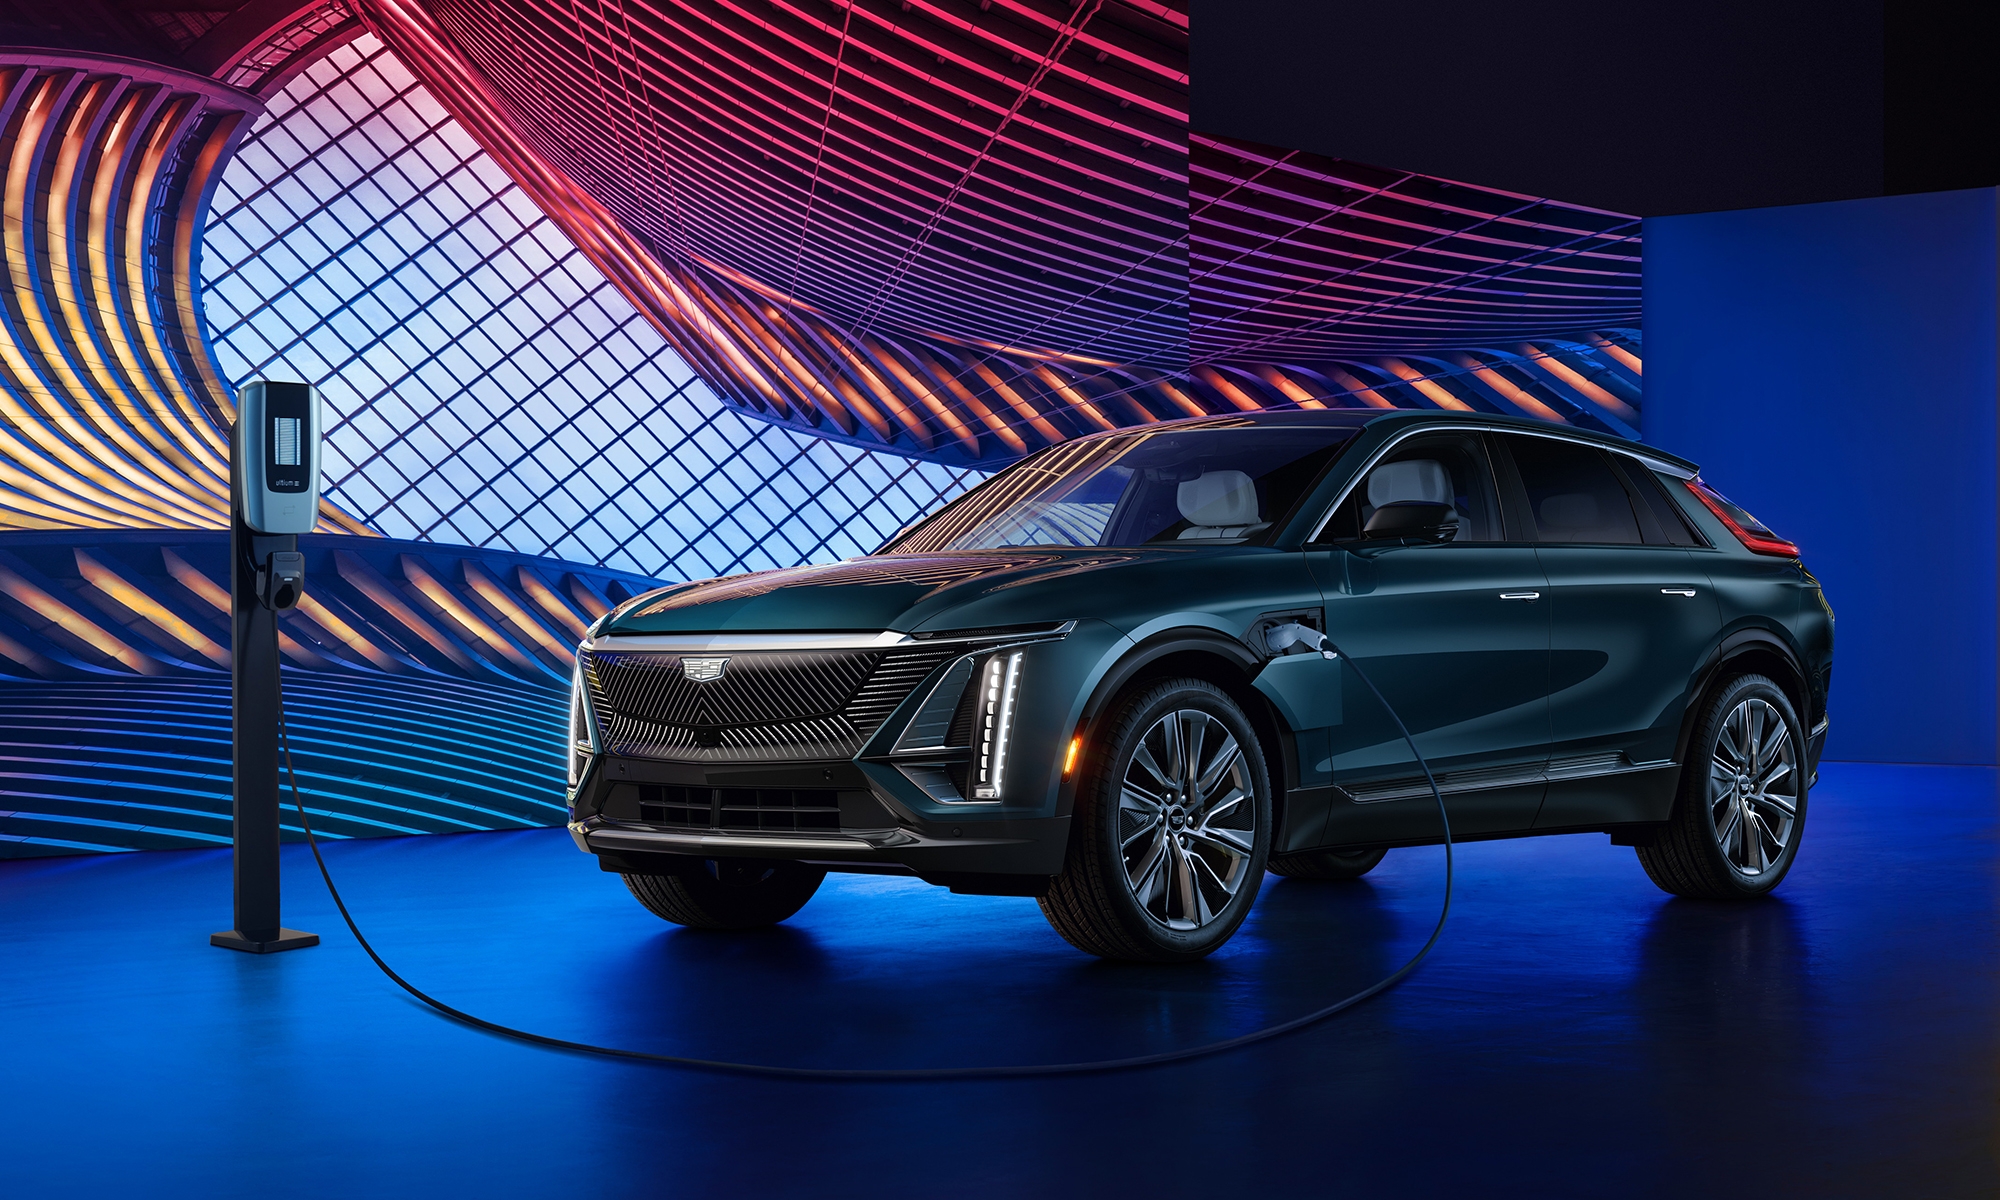 El Cadillac Lyriq será el primer modelo eléctrico del nuevo avance de General Motors hacia Europa.